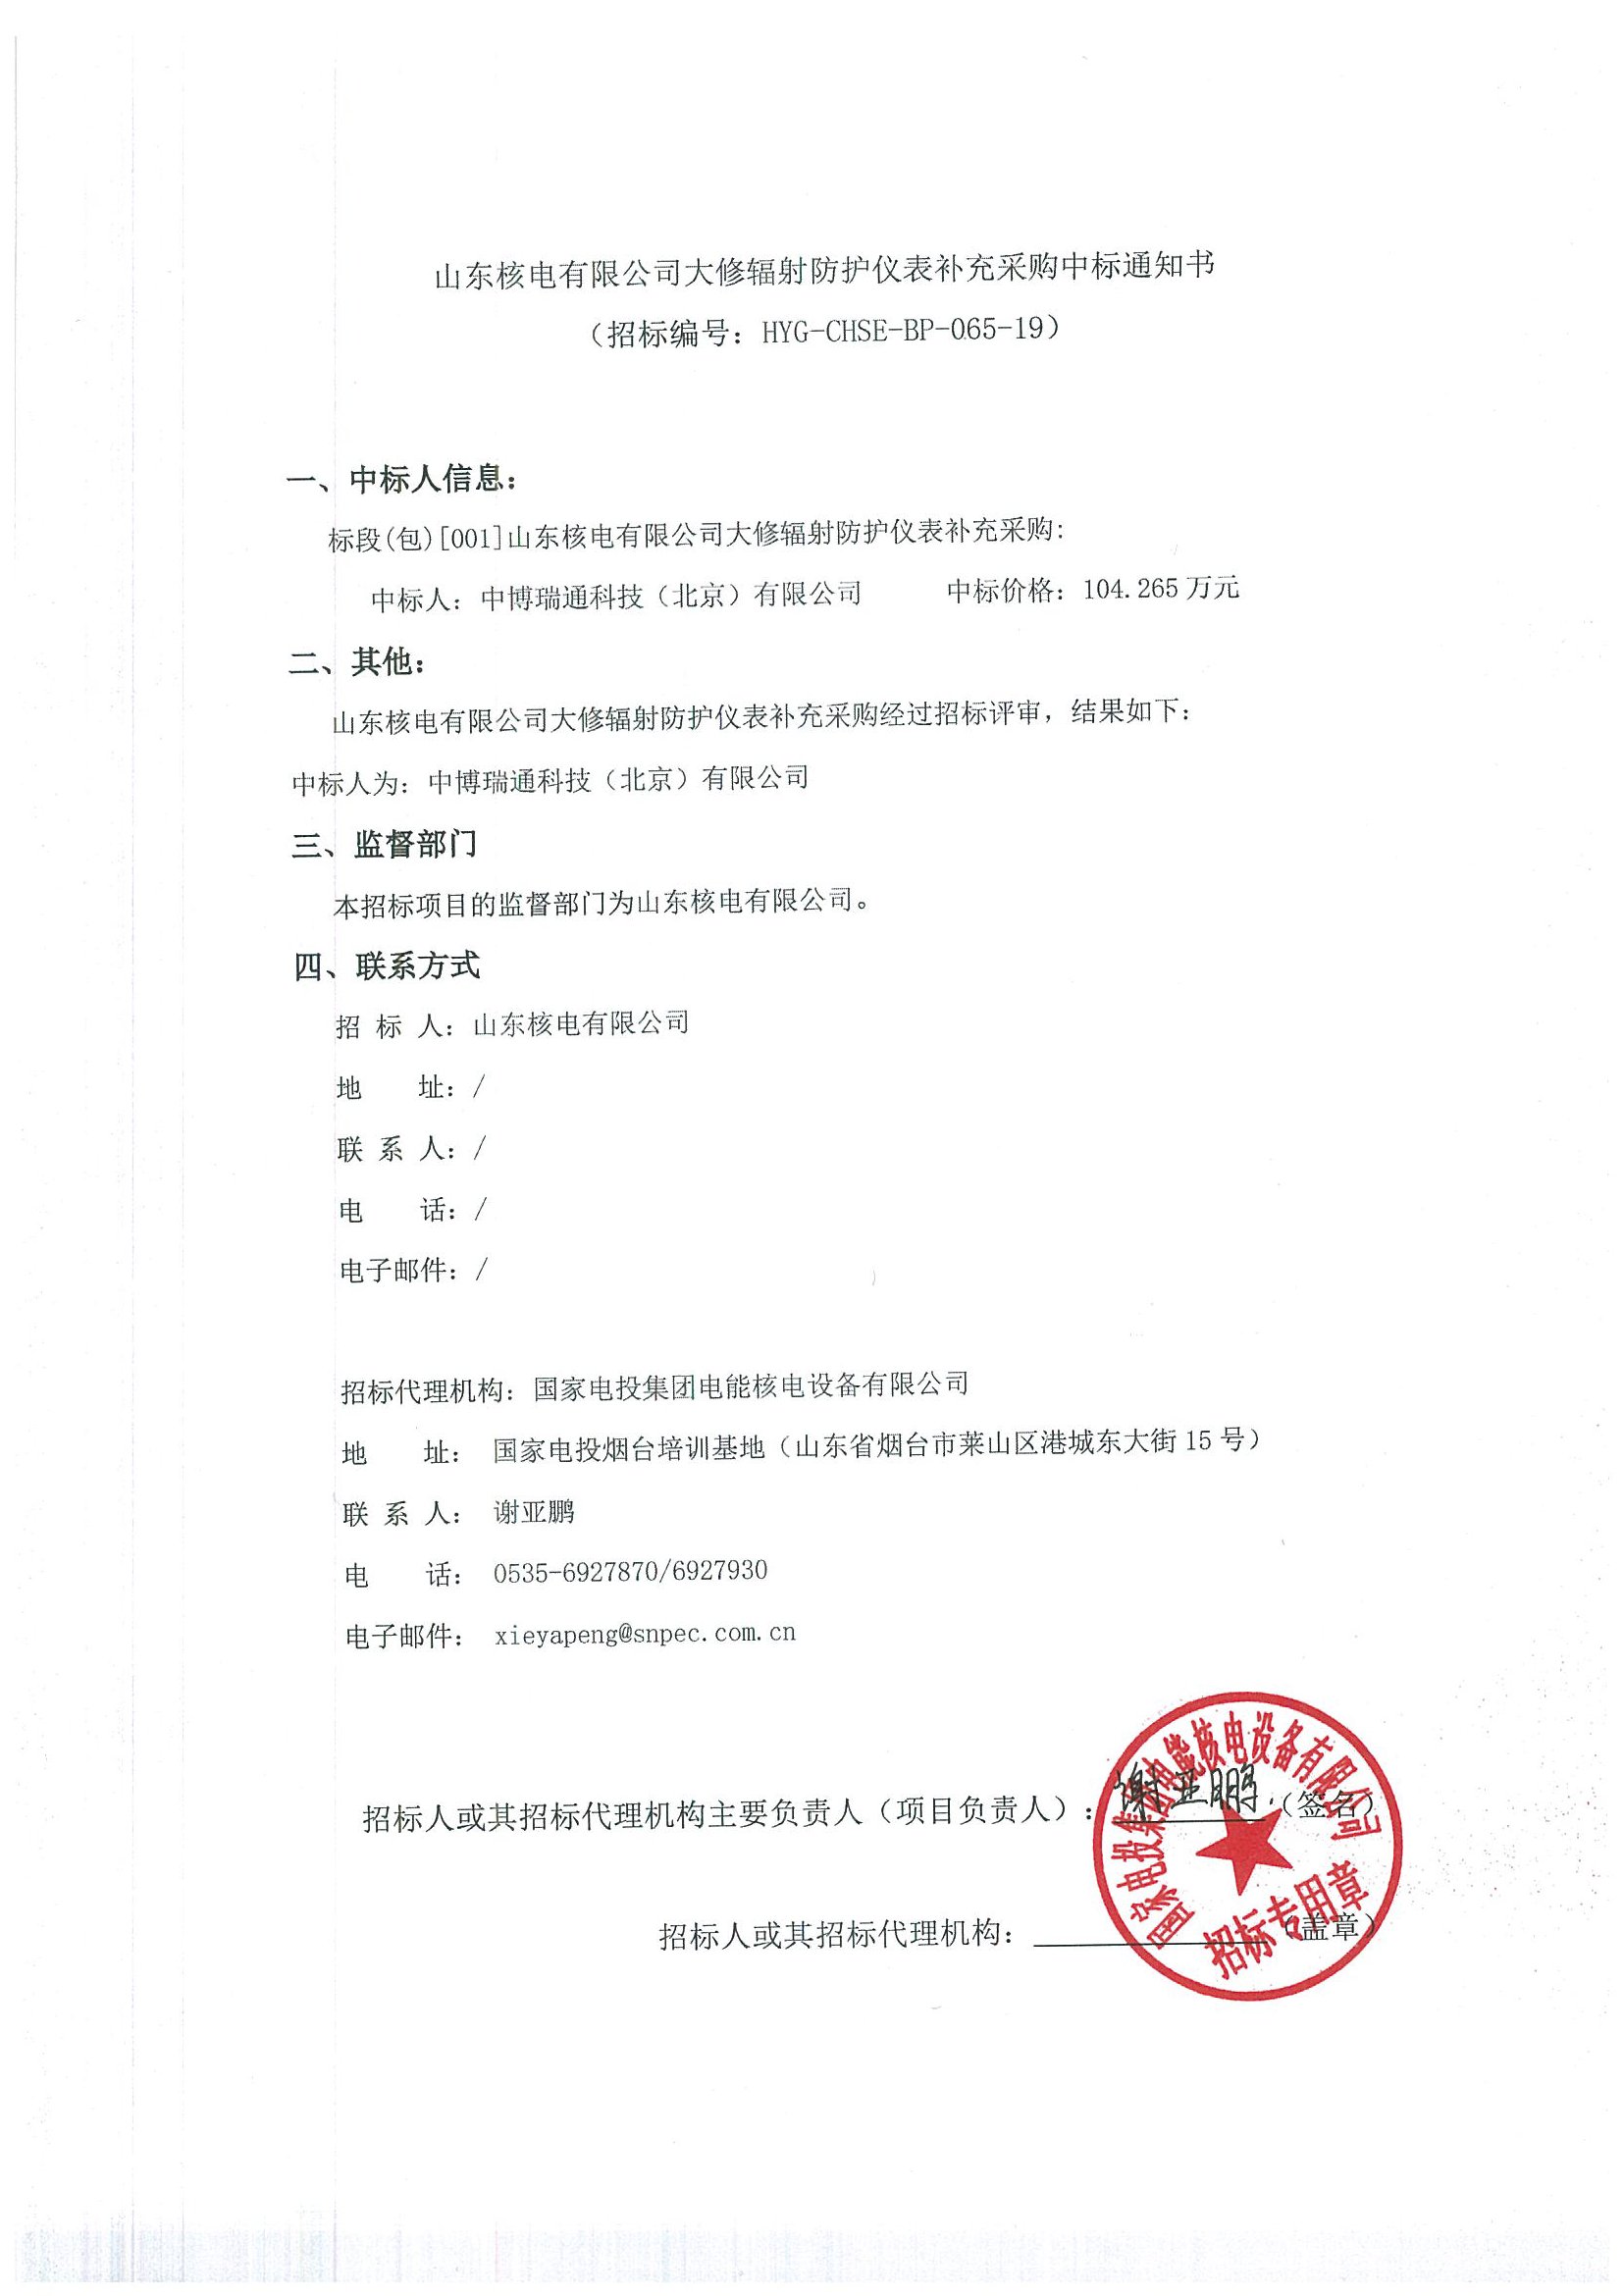 中国核电集团有米乐限公司团体补充医疗保险